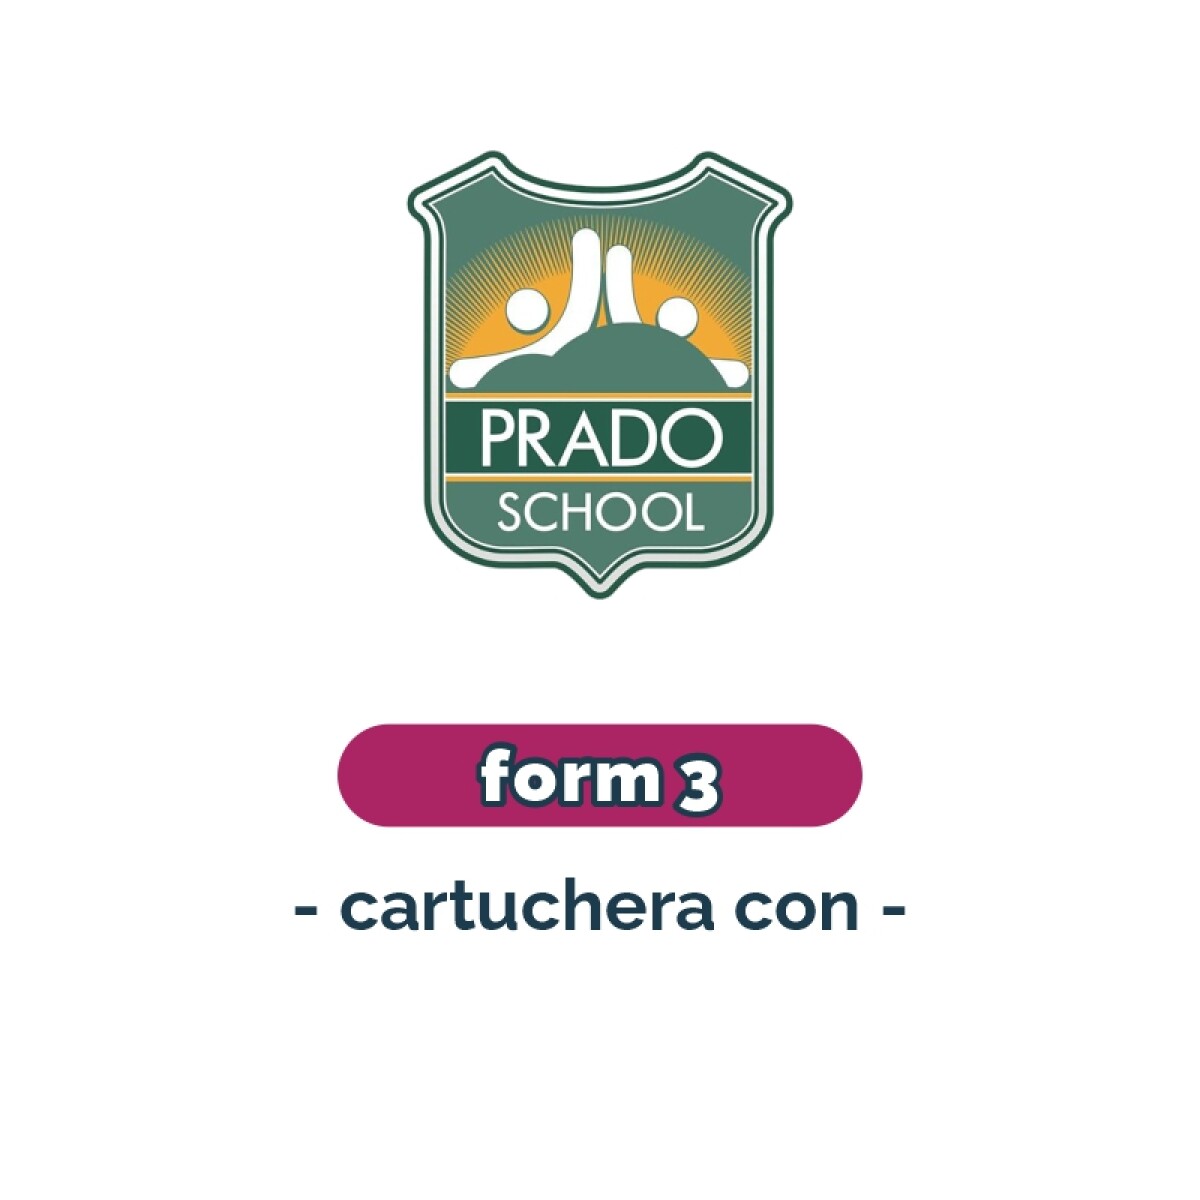 Lista de materiales - Primaria Form 3 cartuchera Prado School 